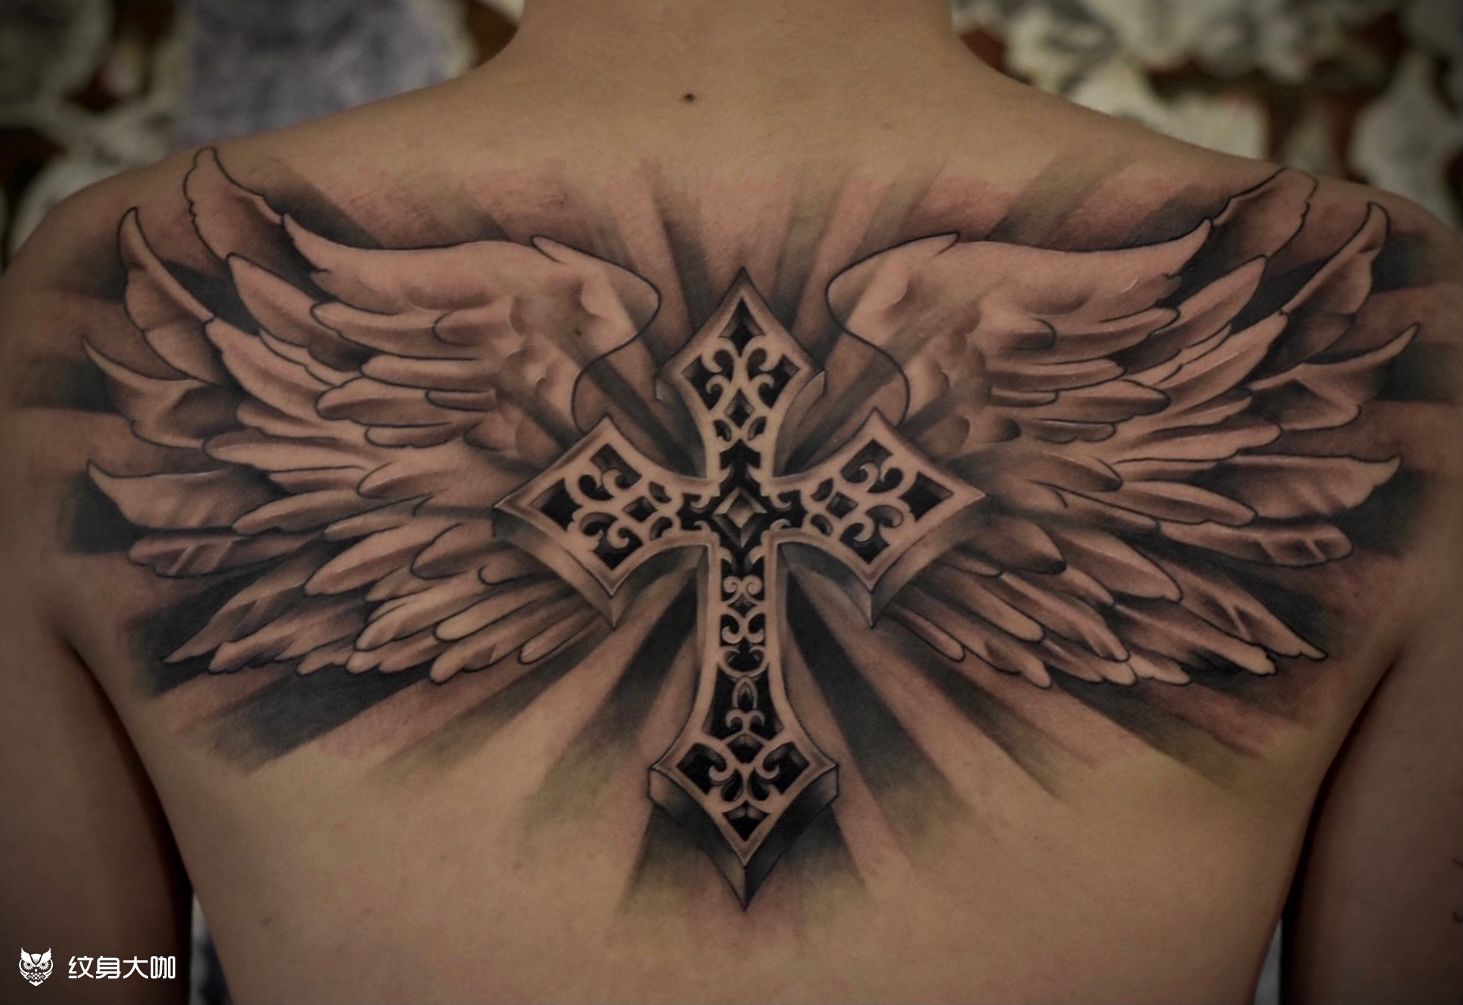 十字架纹身手臂,翅膀十字架纹身图案(2) - 伤感说说吧